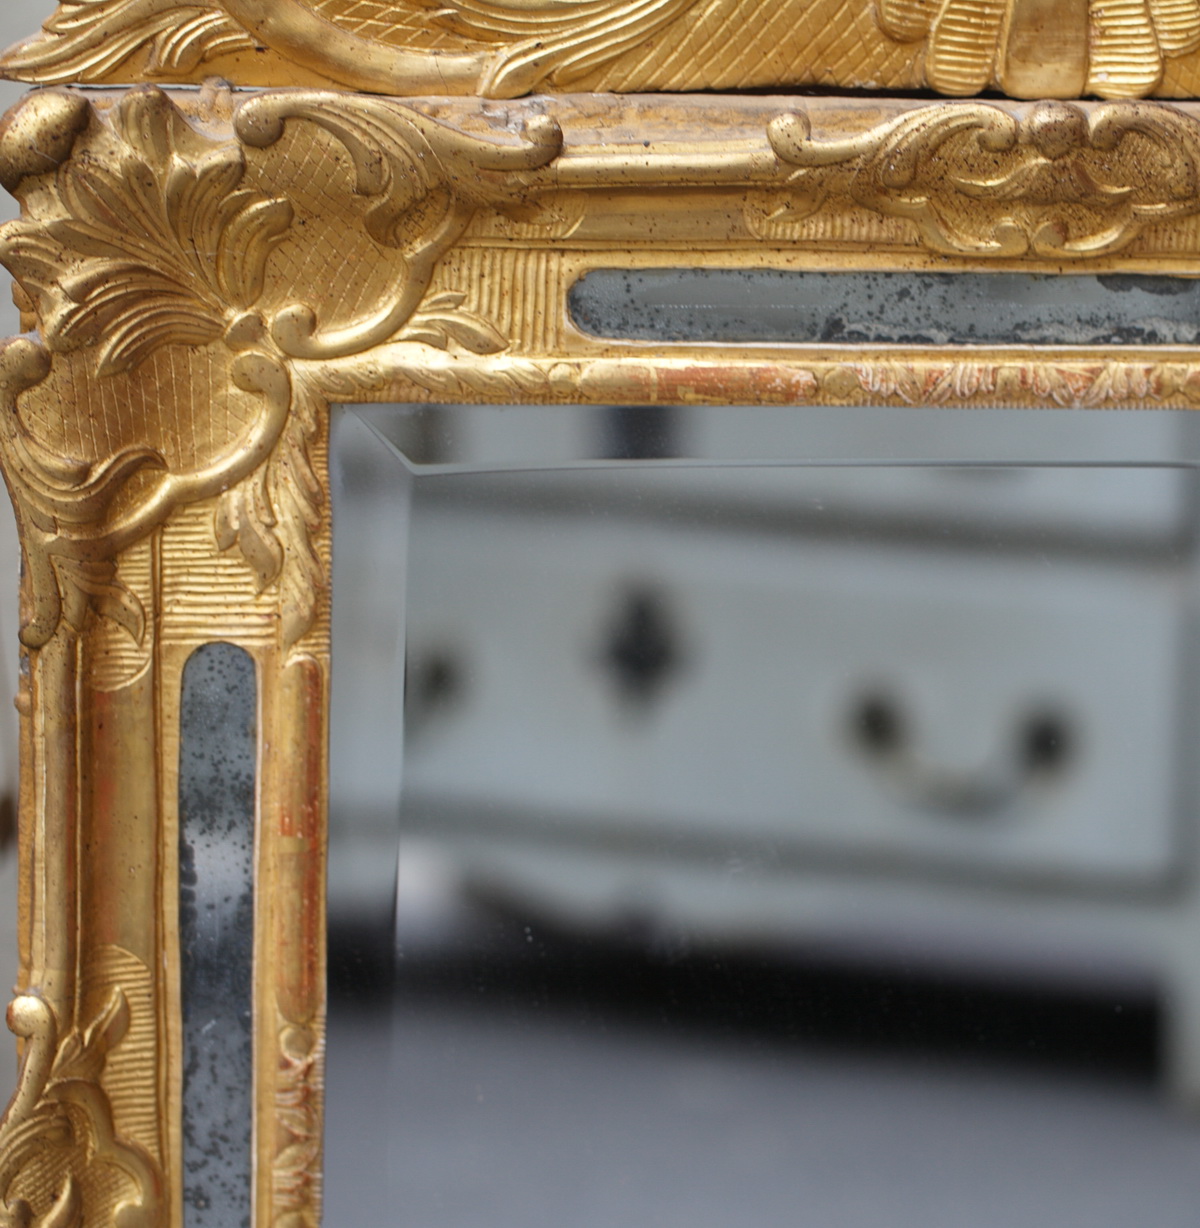 Miroir Louis XV